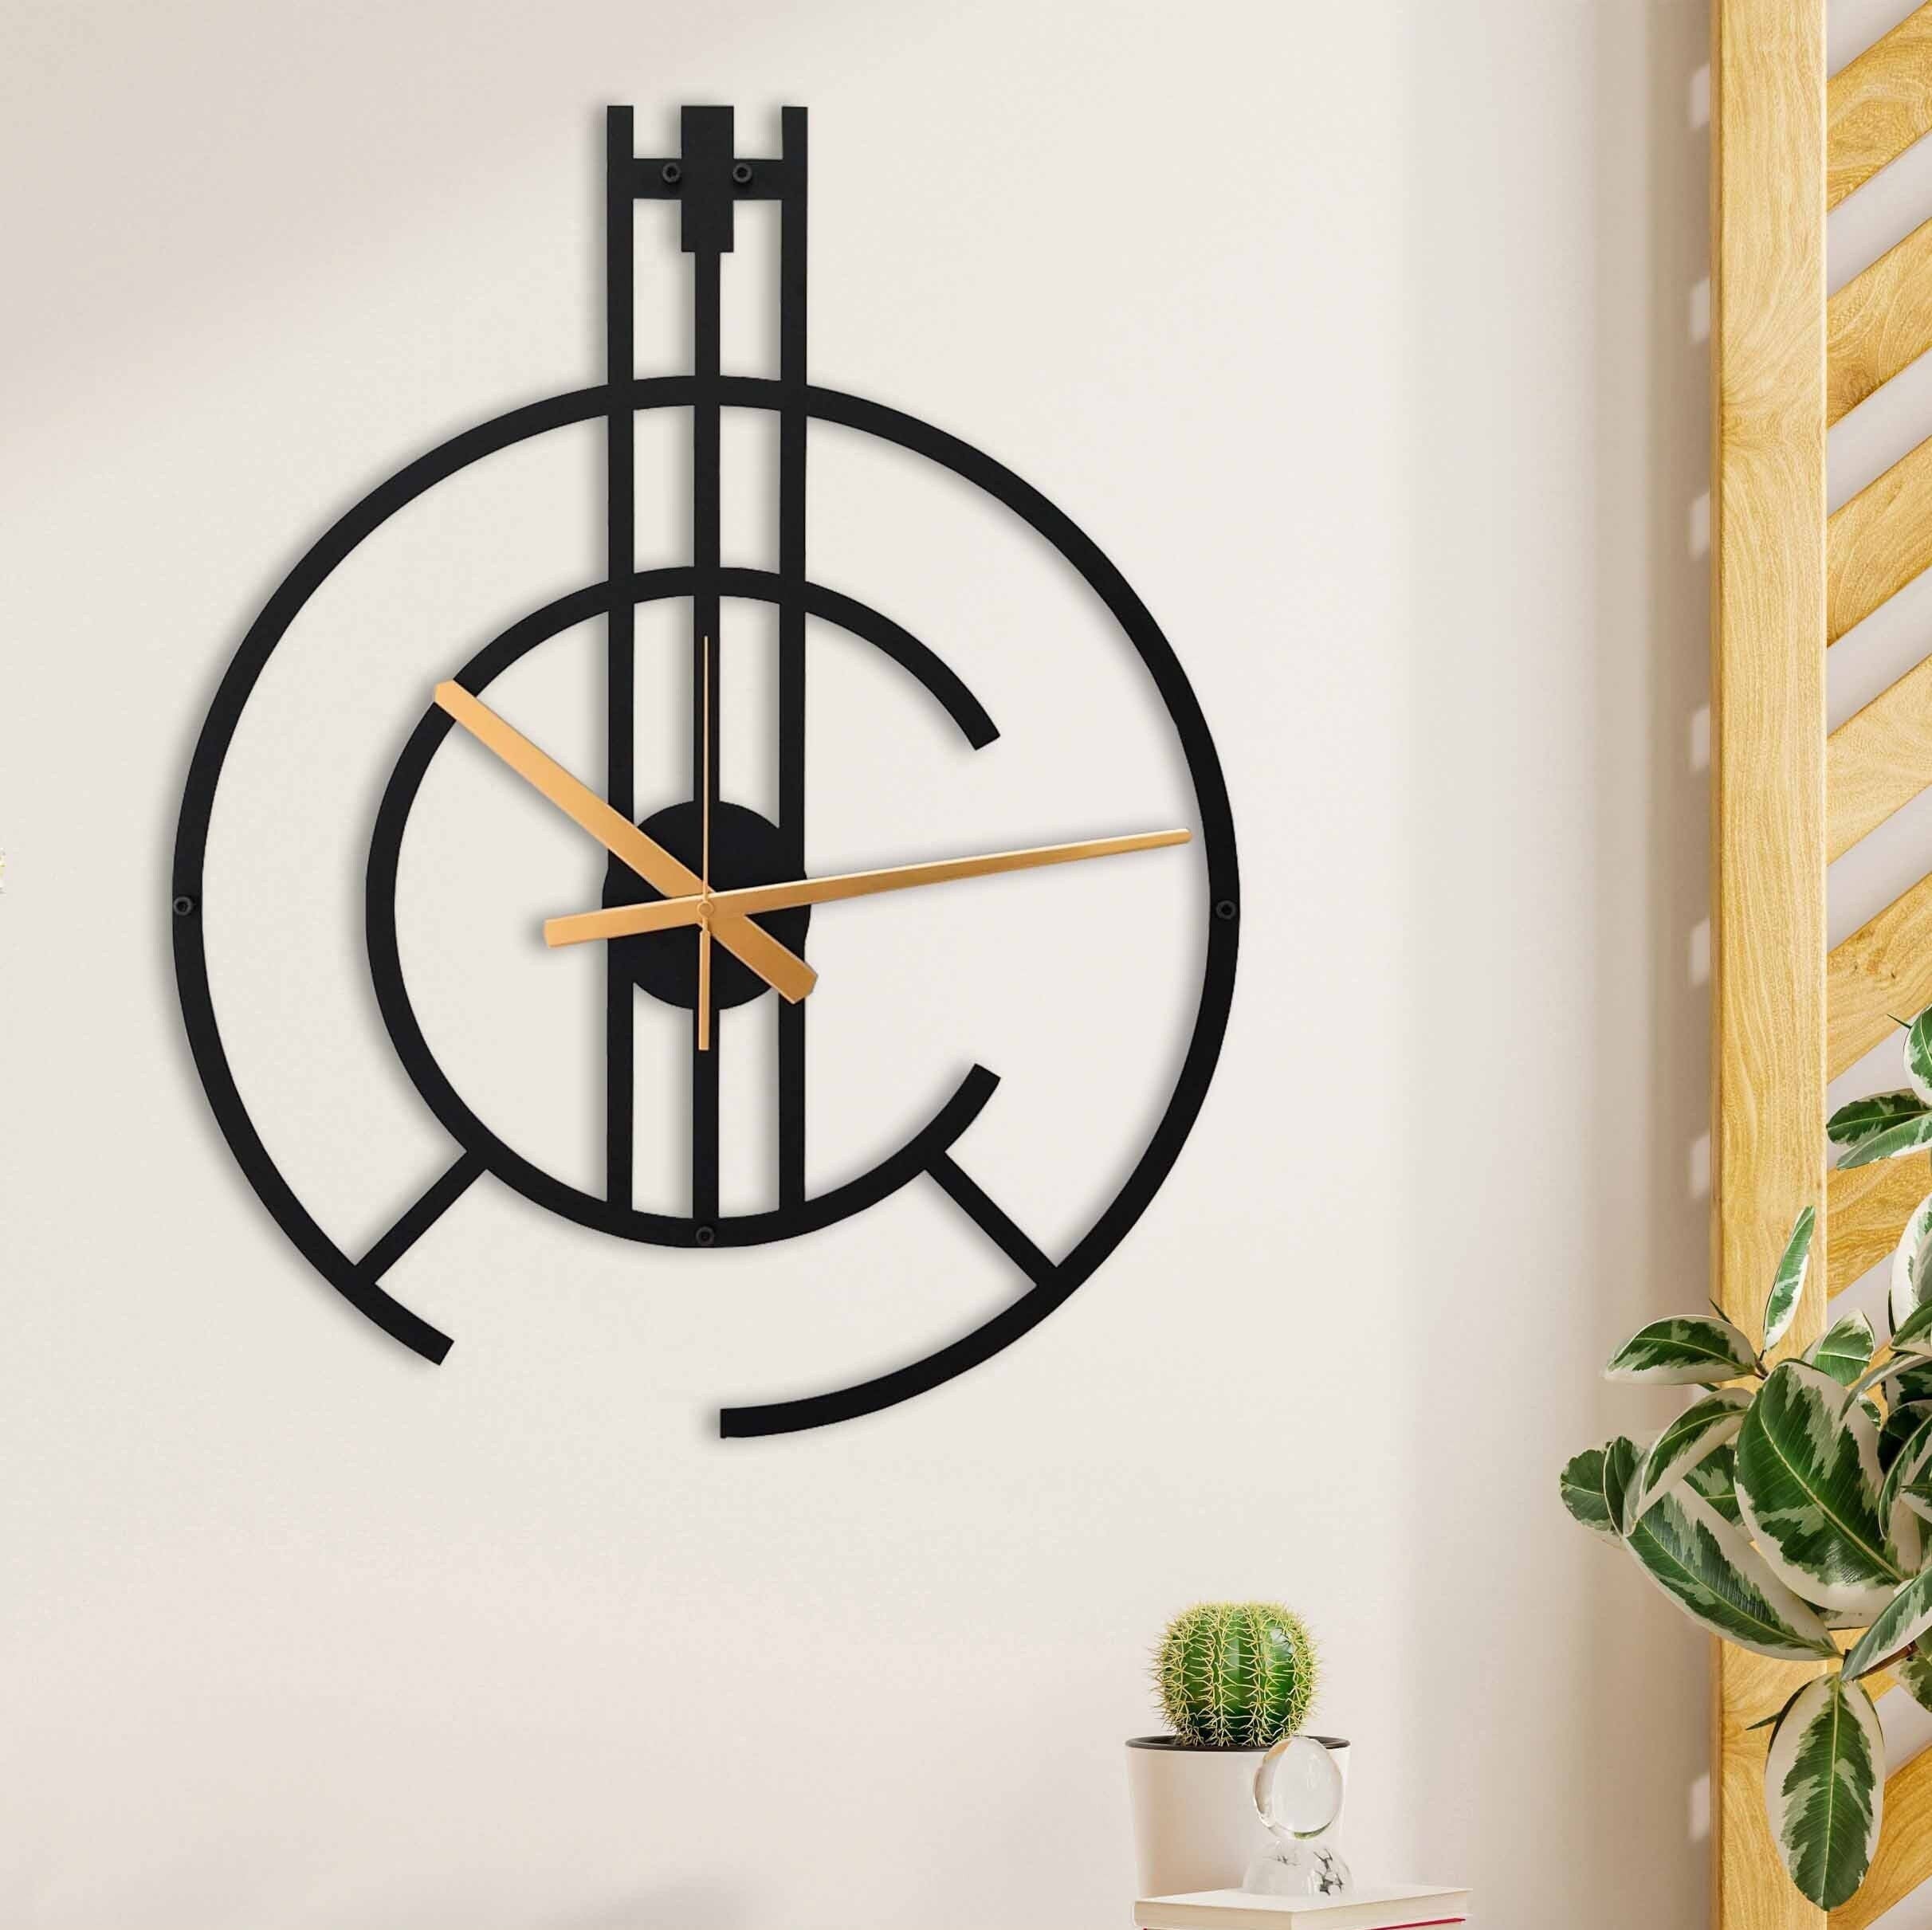 Minimalist Clock, Modern Wall Clock, Black Wall Clock, Unique Wall Clock, Silent Minimal Wall Clock, Metal Wall Clock, Clocks For Wall